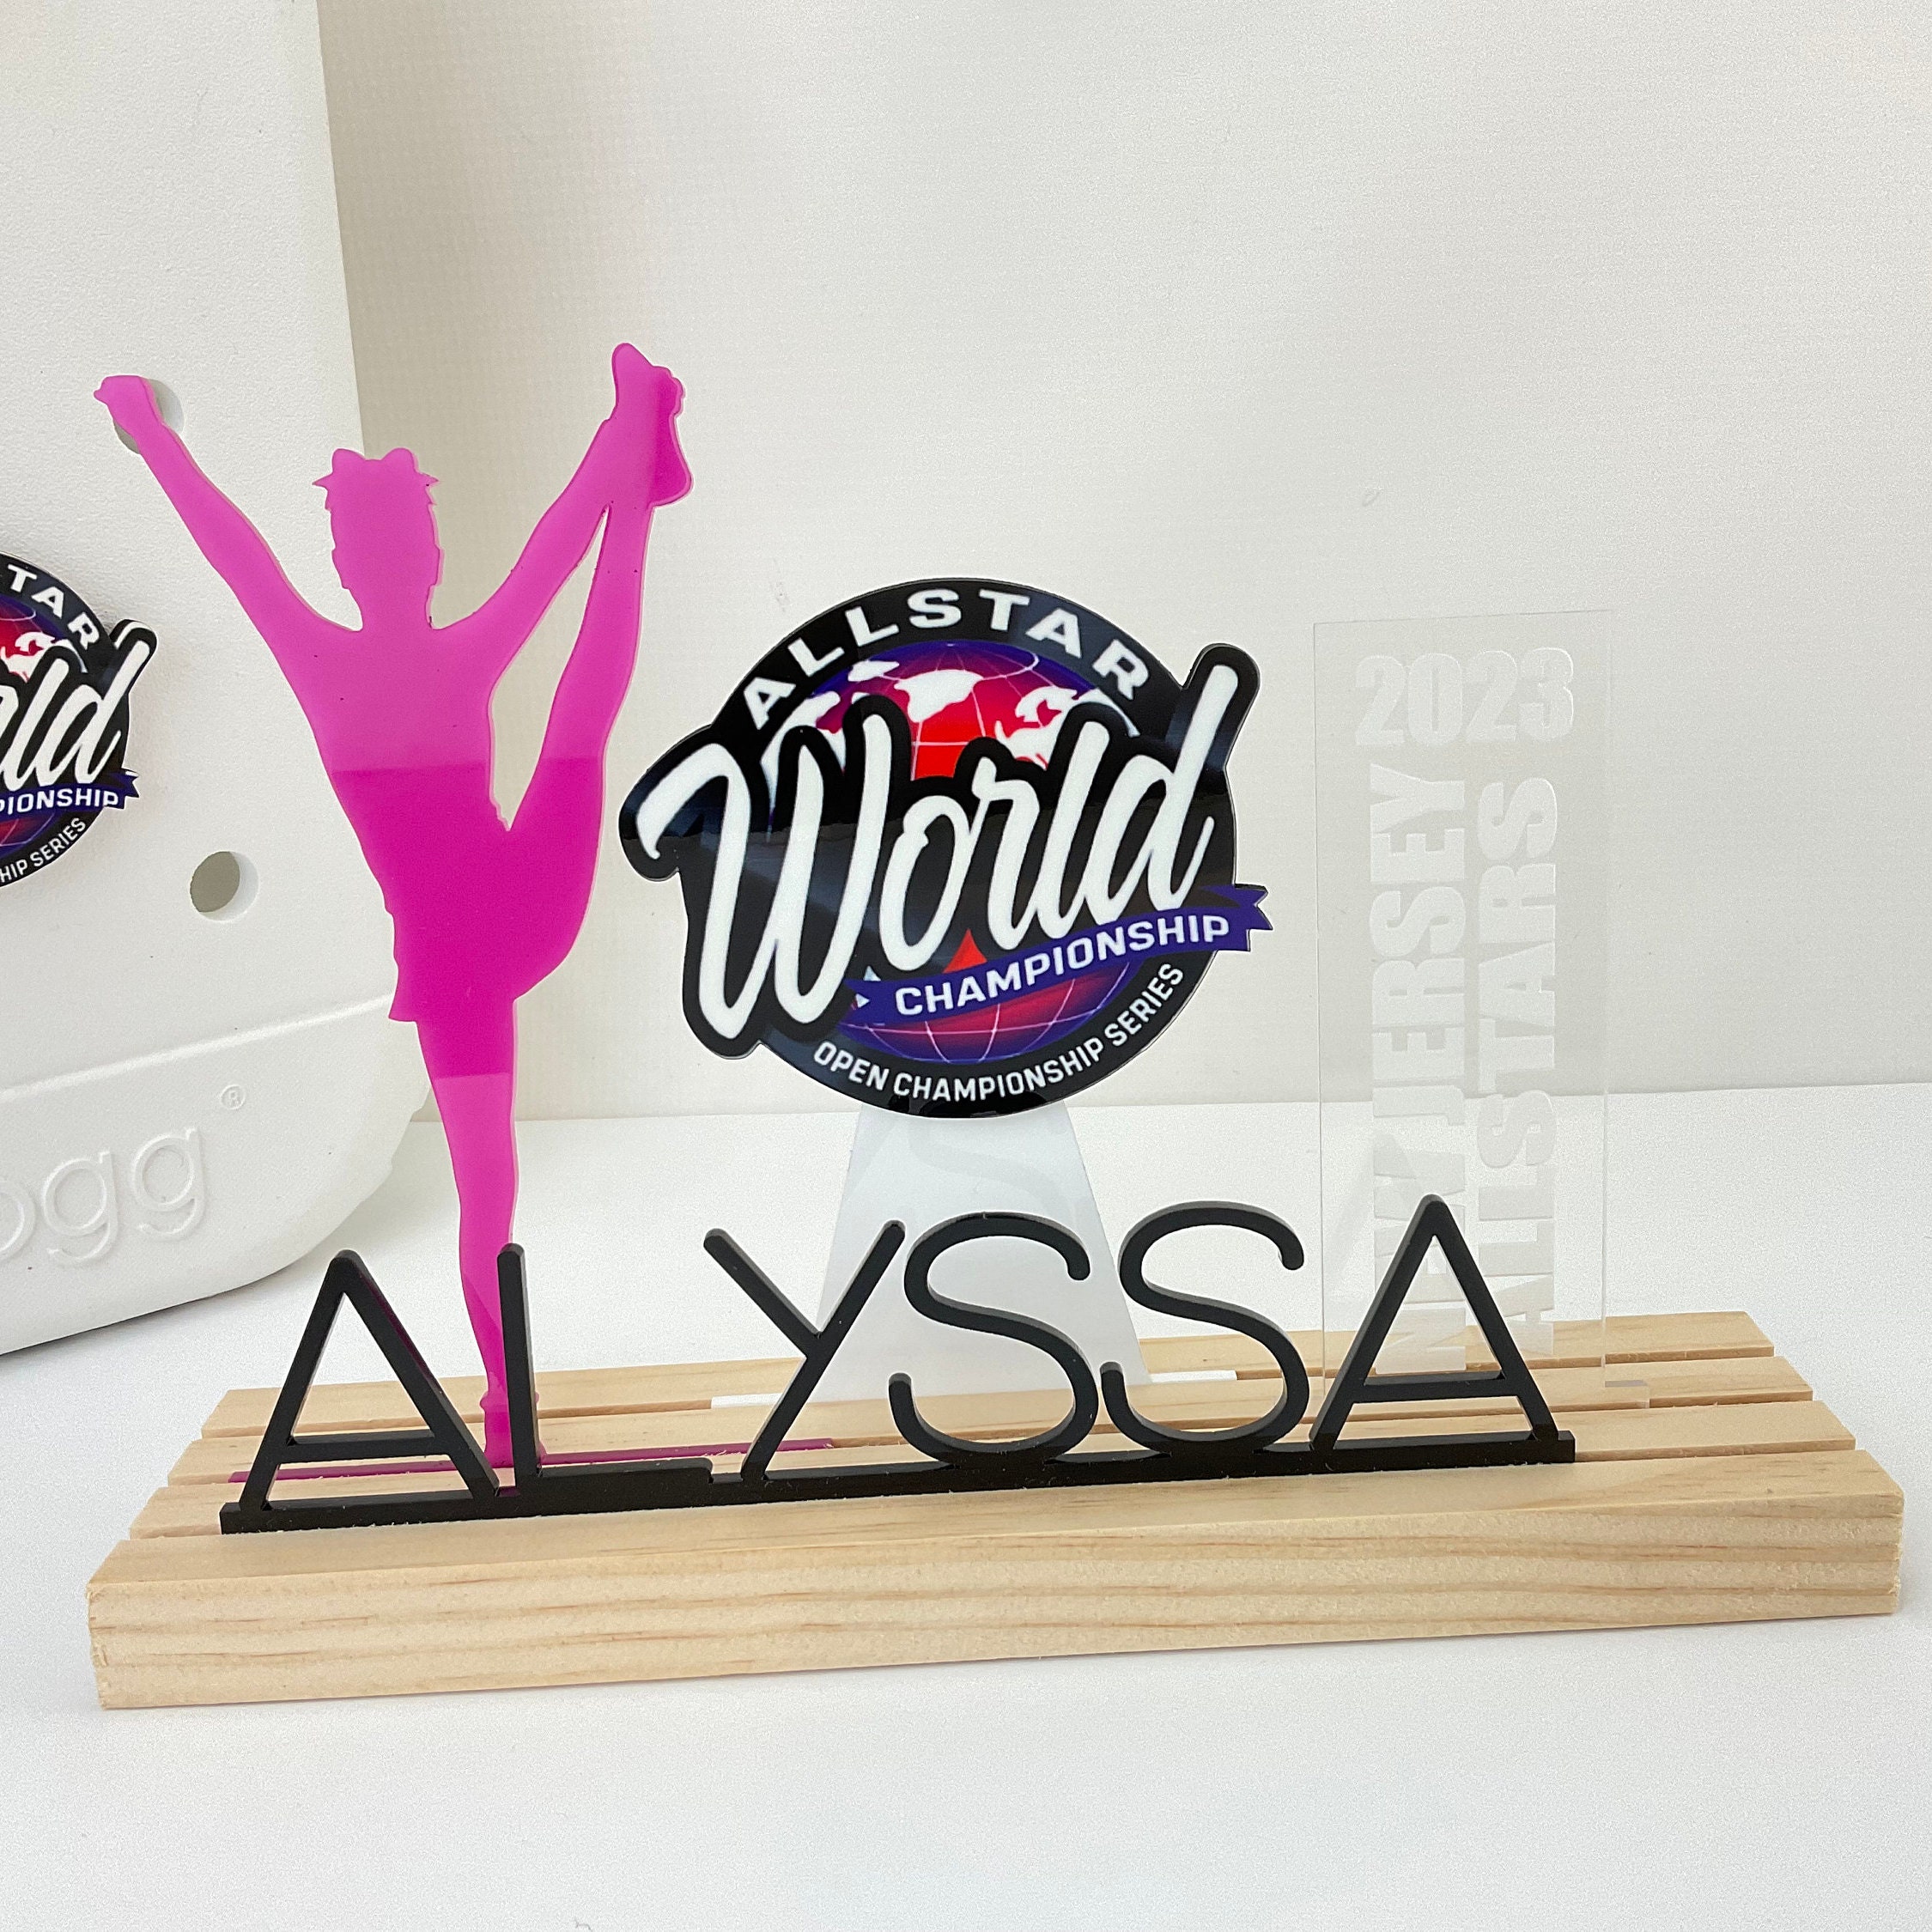 Logos - Allstar World Championship